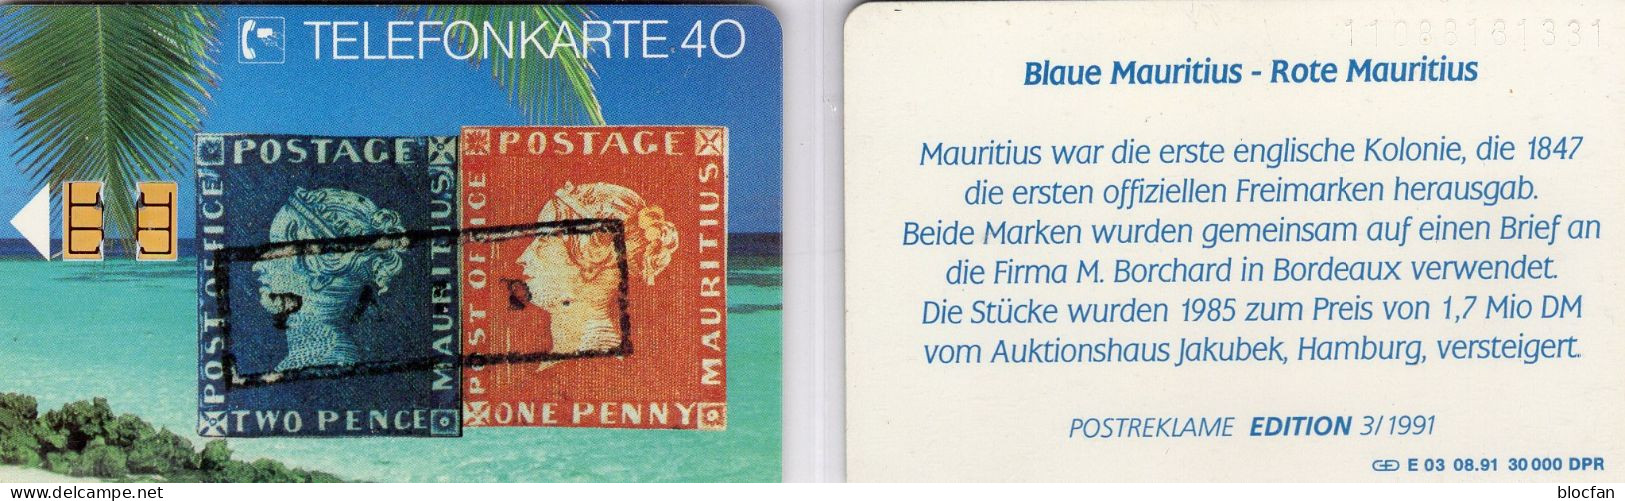 Blaue/rote Mauritius TK E03/1991 30.000Expl. ** 25€ Edition1 Kolonie Der UK/GB TC History Stamps On Phonecard Of Germany - E-Series : Edizione Della D. Postreklame